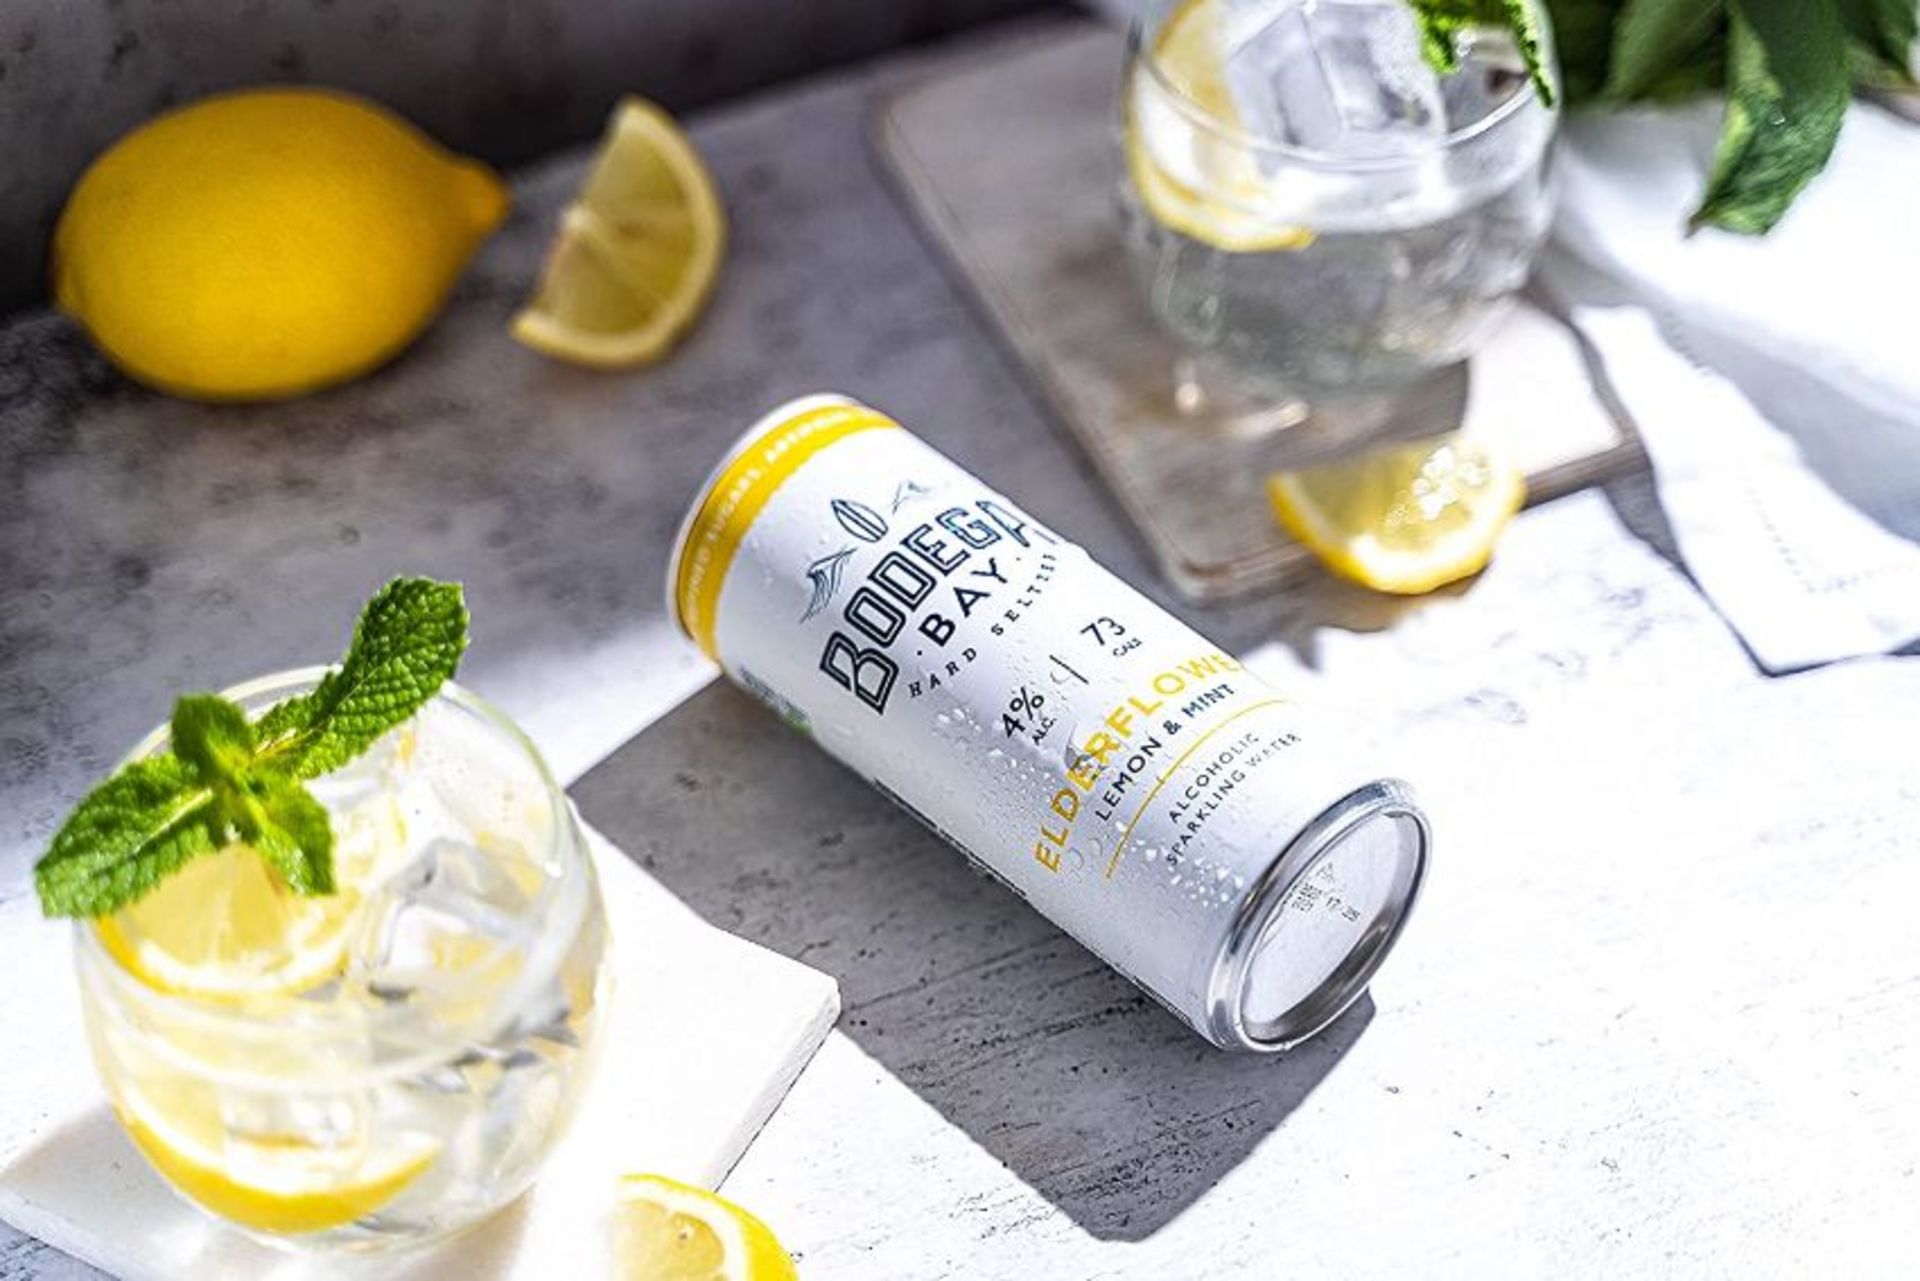 24 x Bodega Bay Hard Seltzer 250ml Alcoholic Sparkling Water Drinks - Elderflower Lemon & Mint - Image 8 of 9